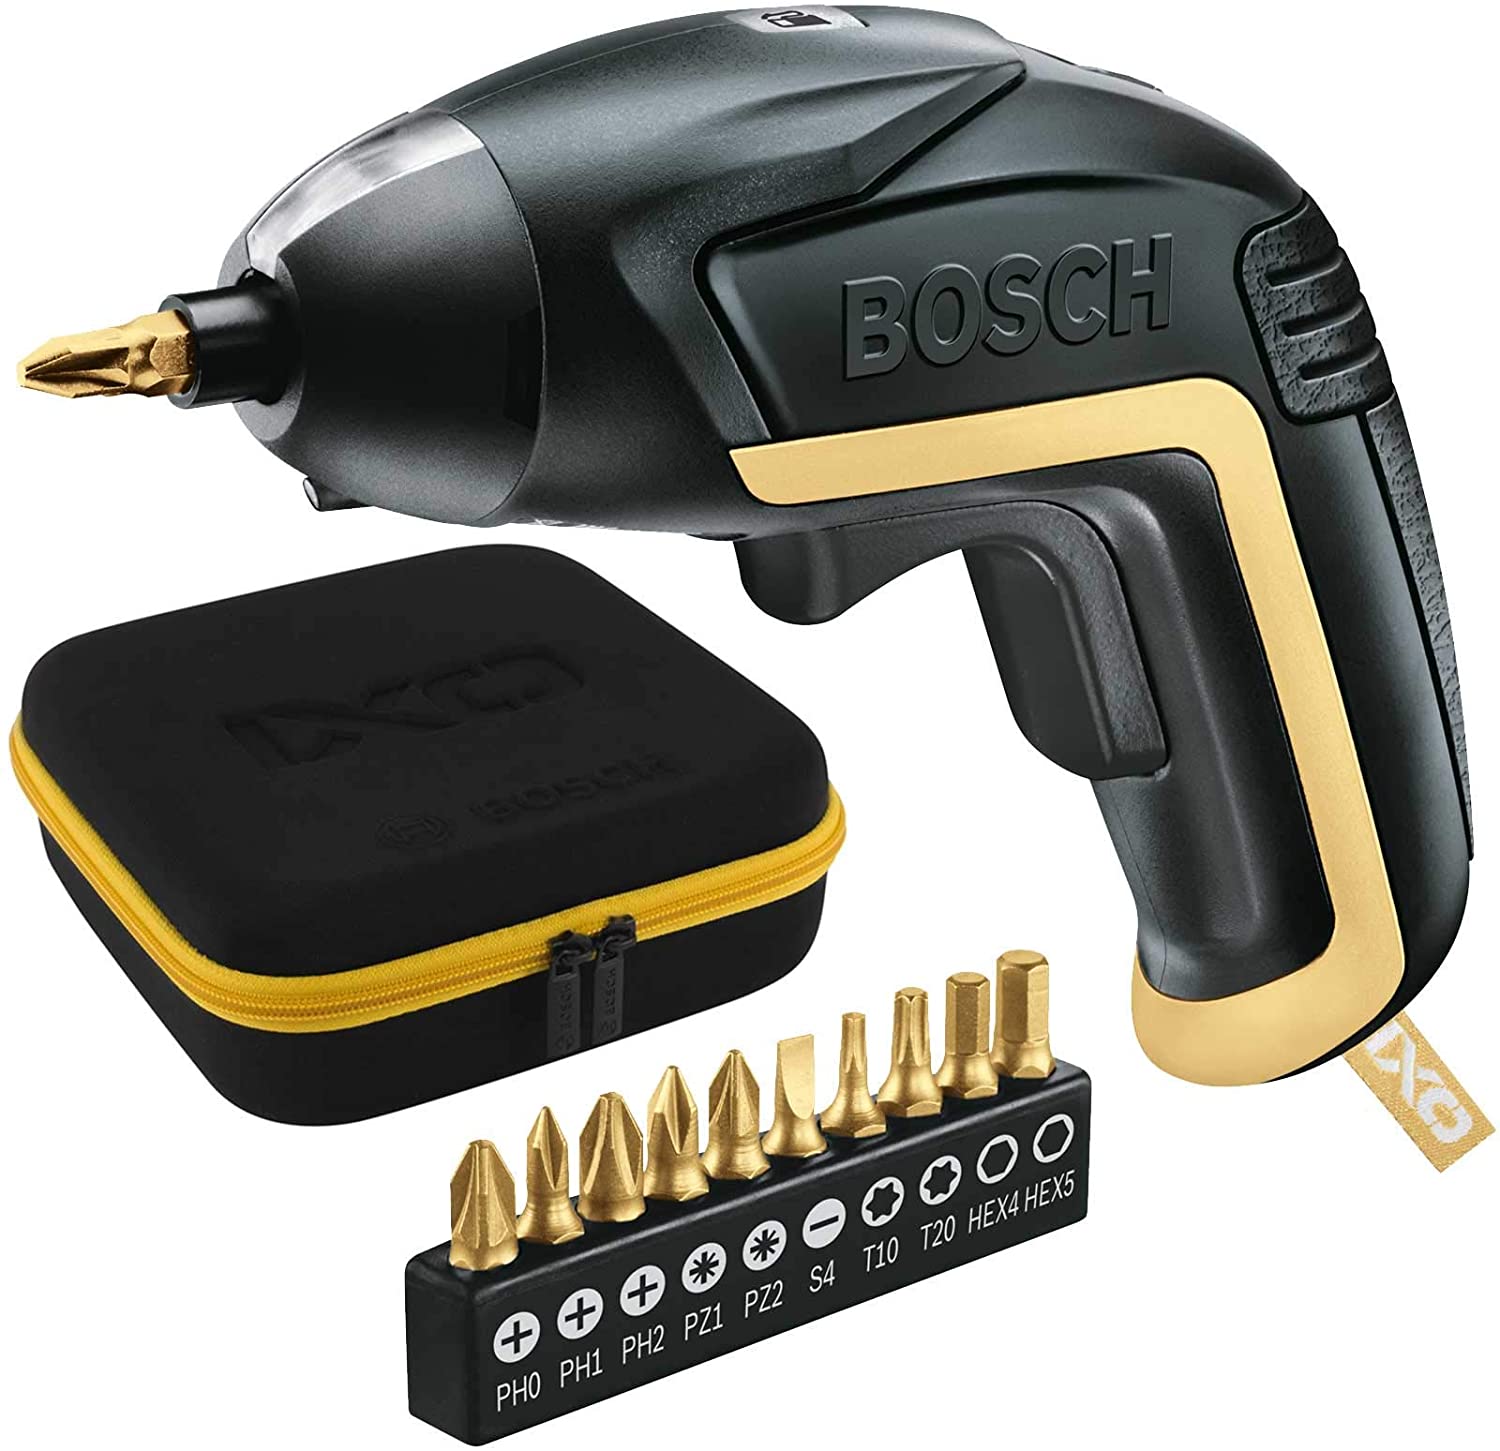 Bosch IXO V 3.6V Electric Screwdriver, UK Plug